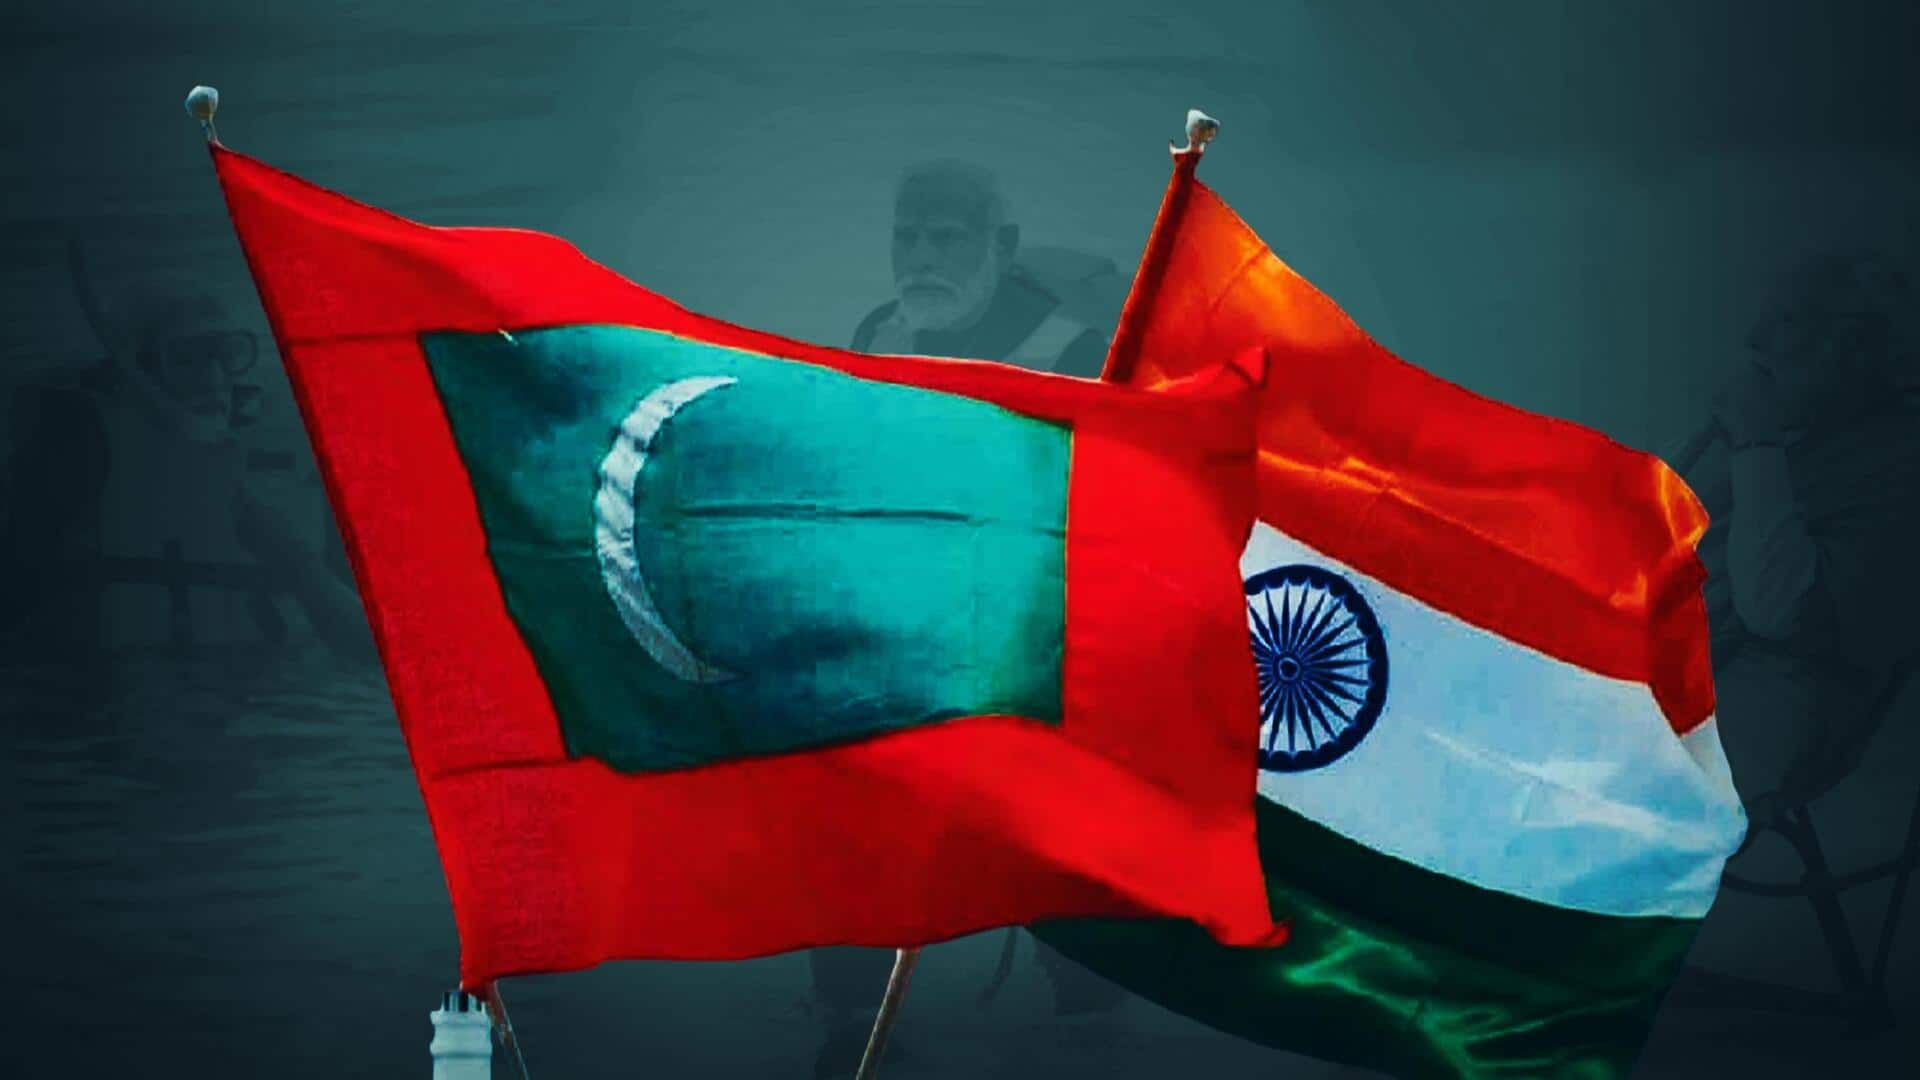 प्रधानमंत्री मोदी के खिलाफ टिप्पणी: भारत ने मालदीव के राजदूत को तलब किया, नाराजगी जताई